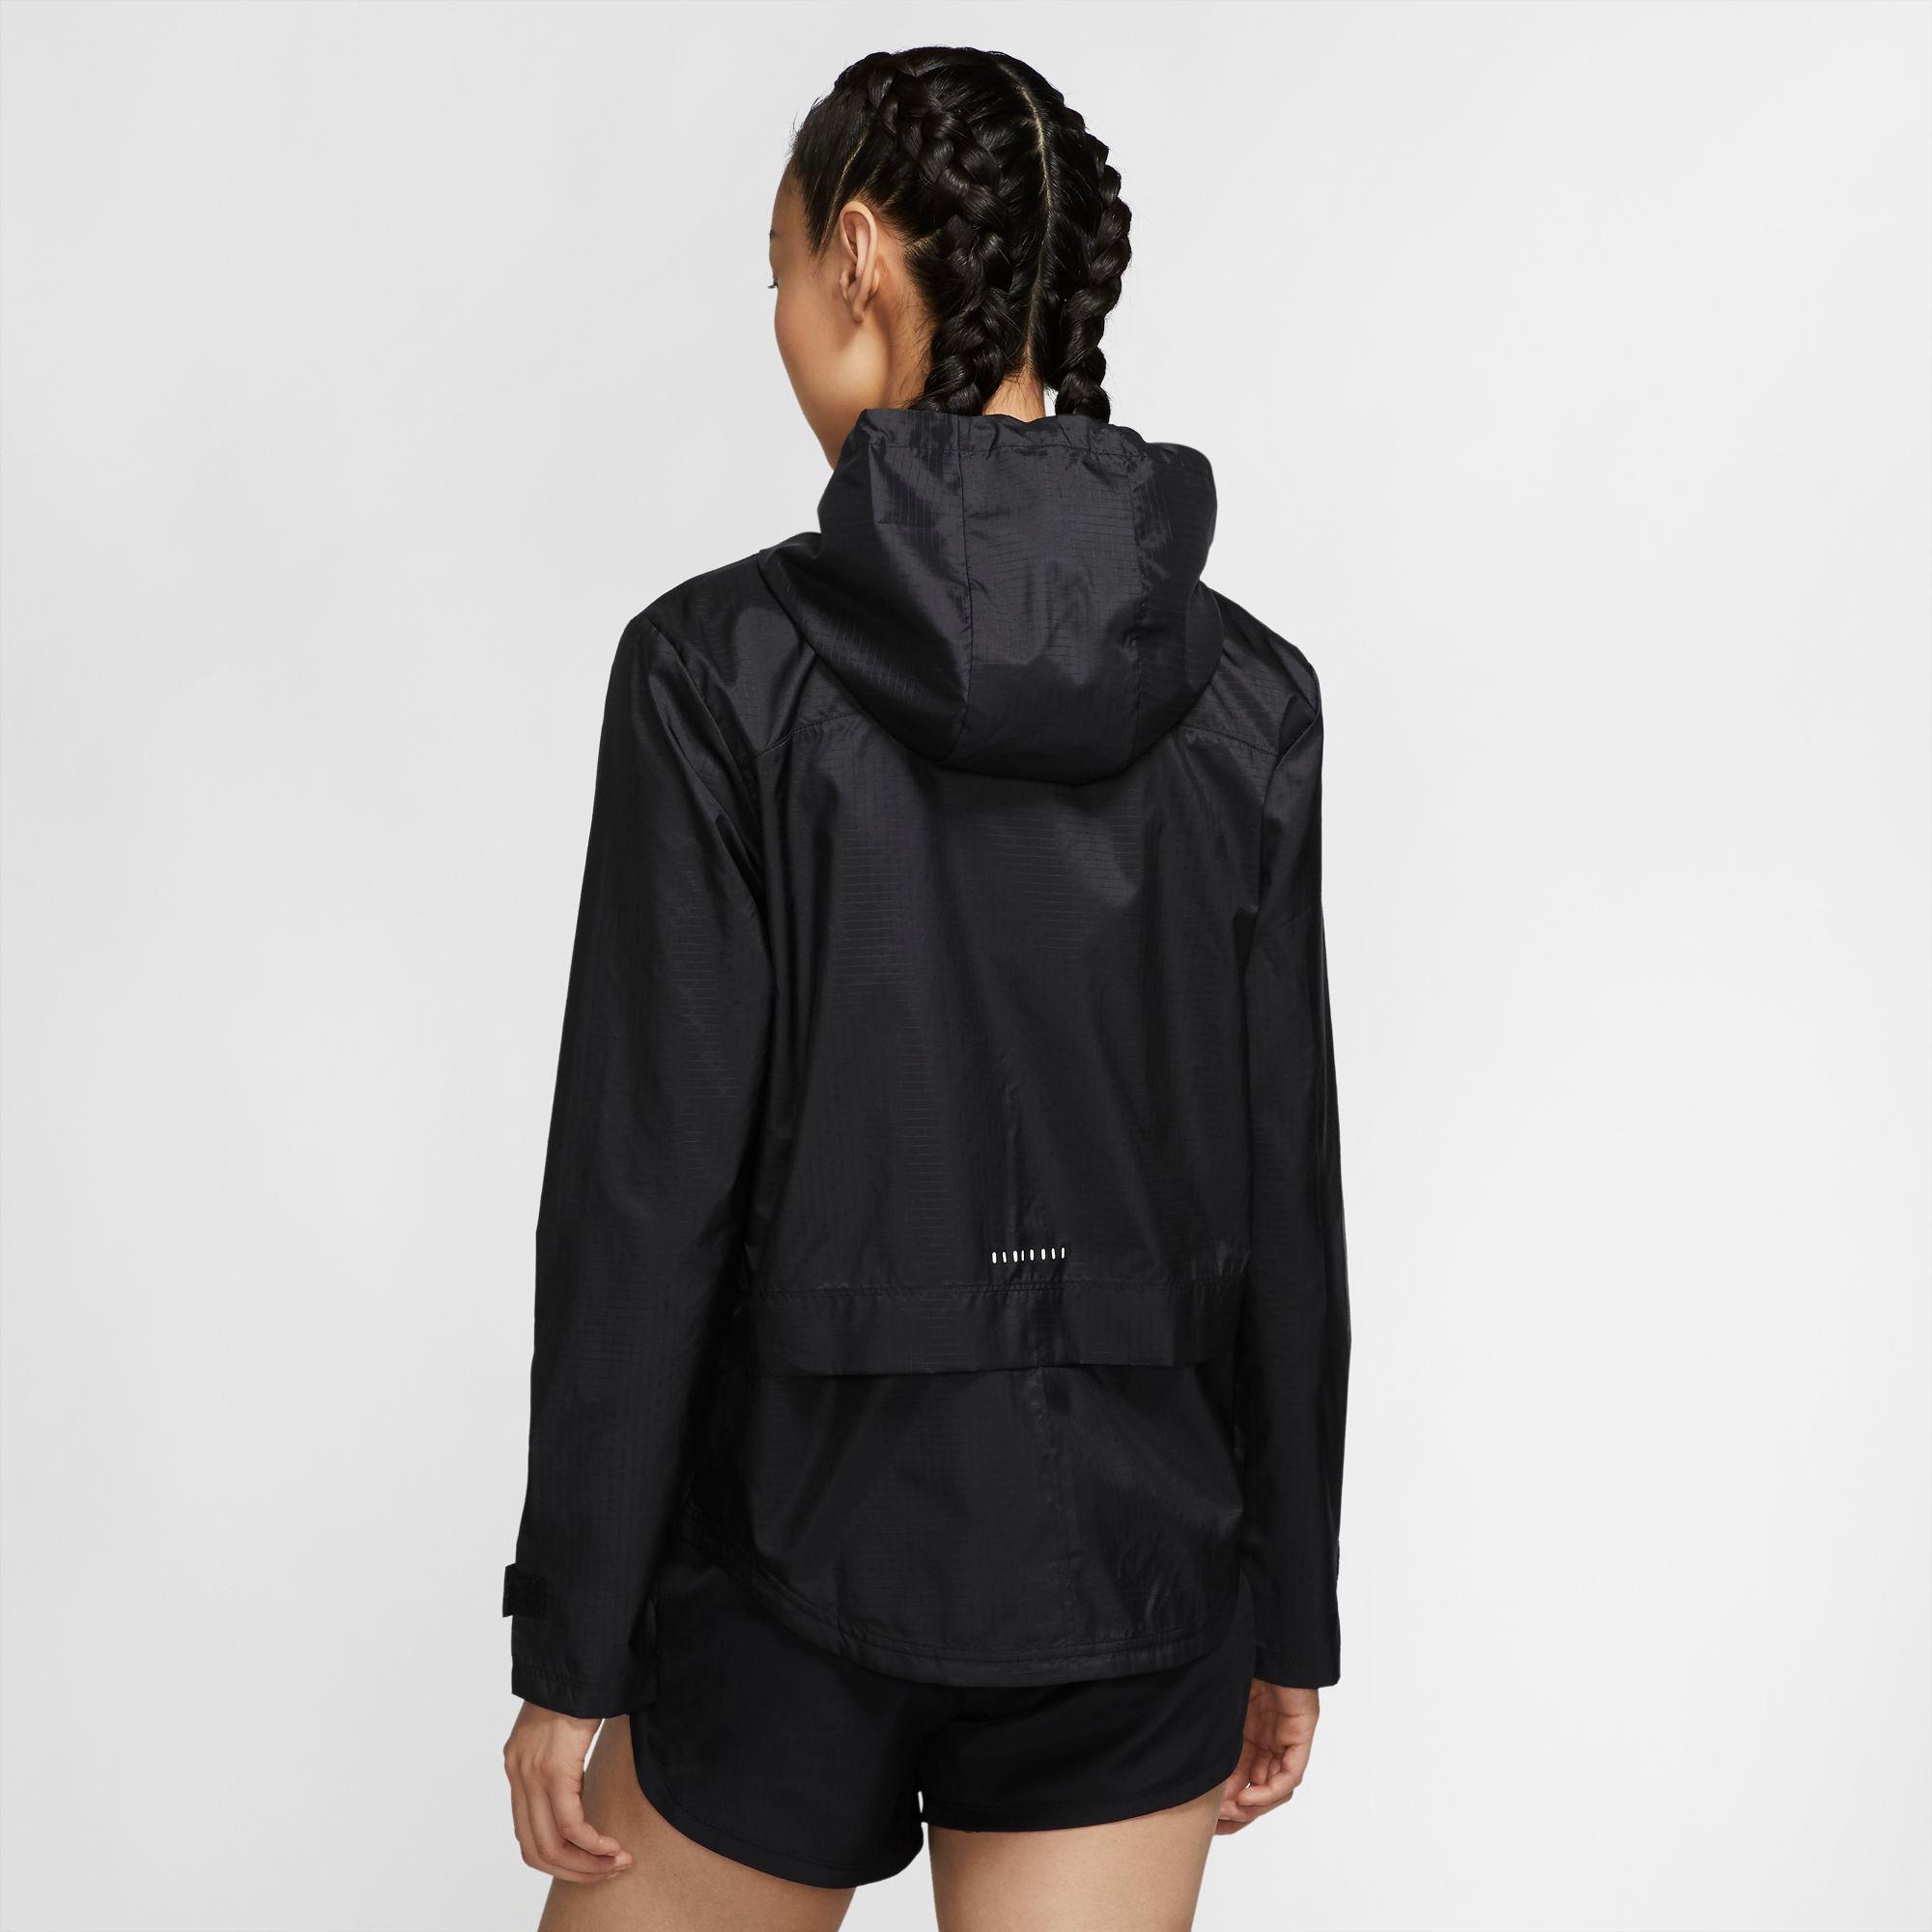 black-reflective Shop im Laufjacke von Nike Damen SportScheck kaufen Online Essential silv